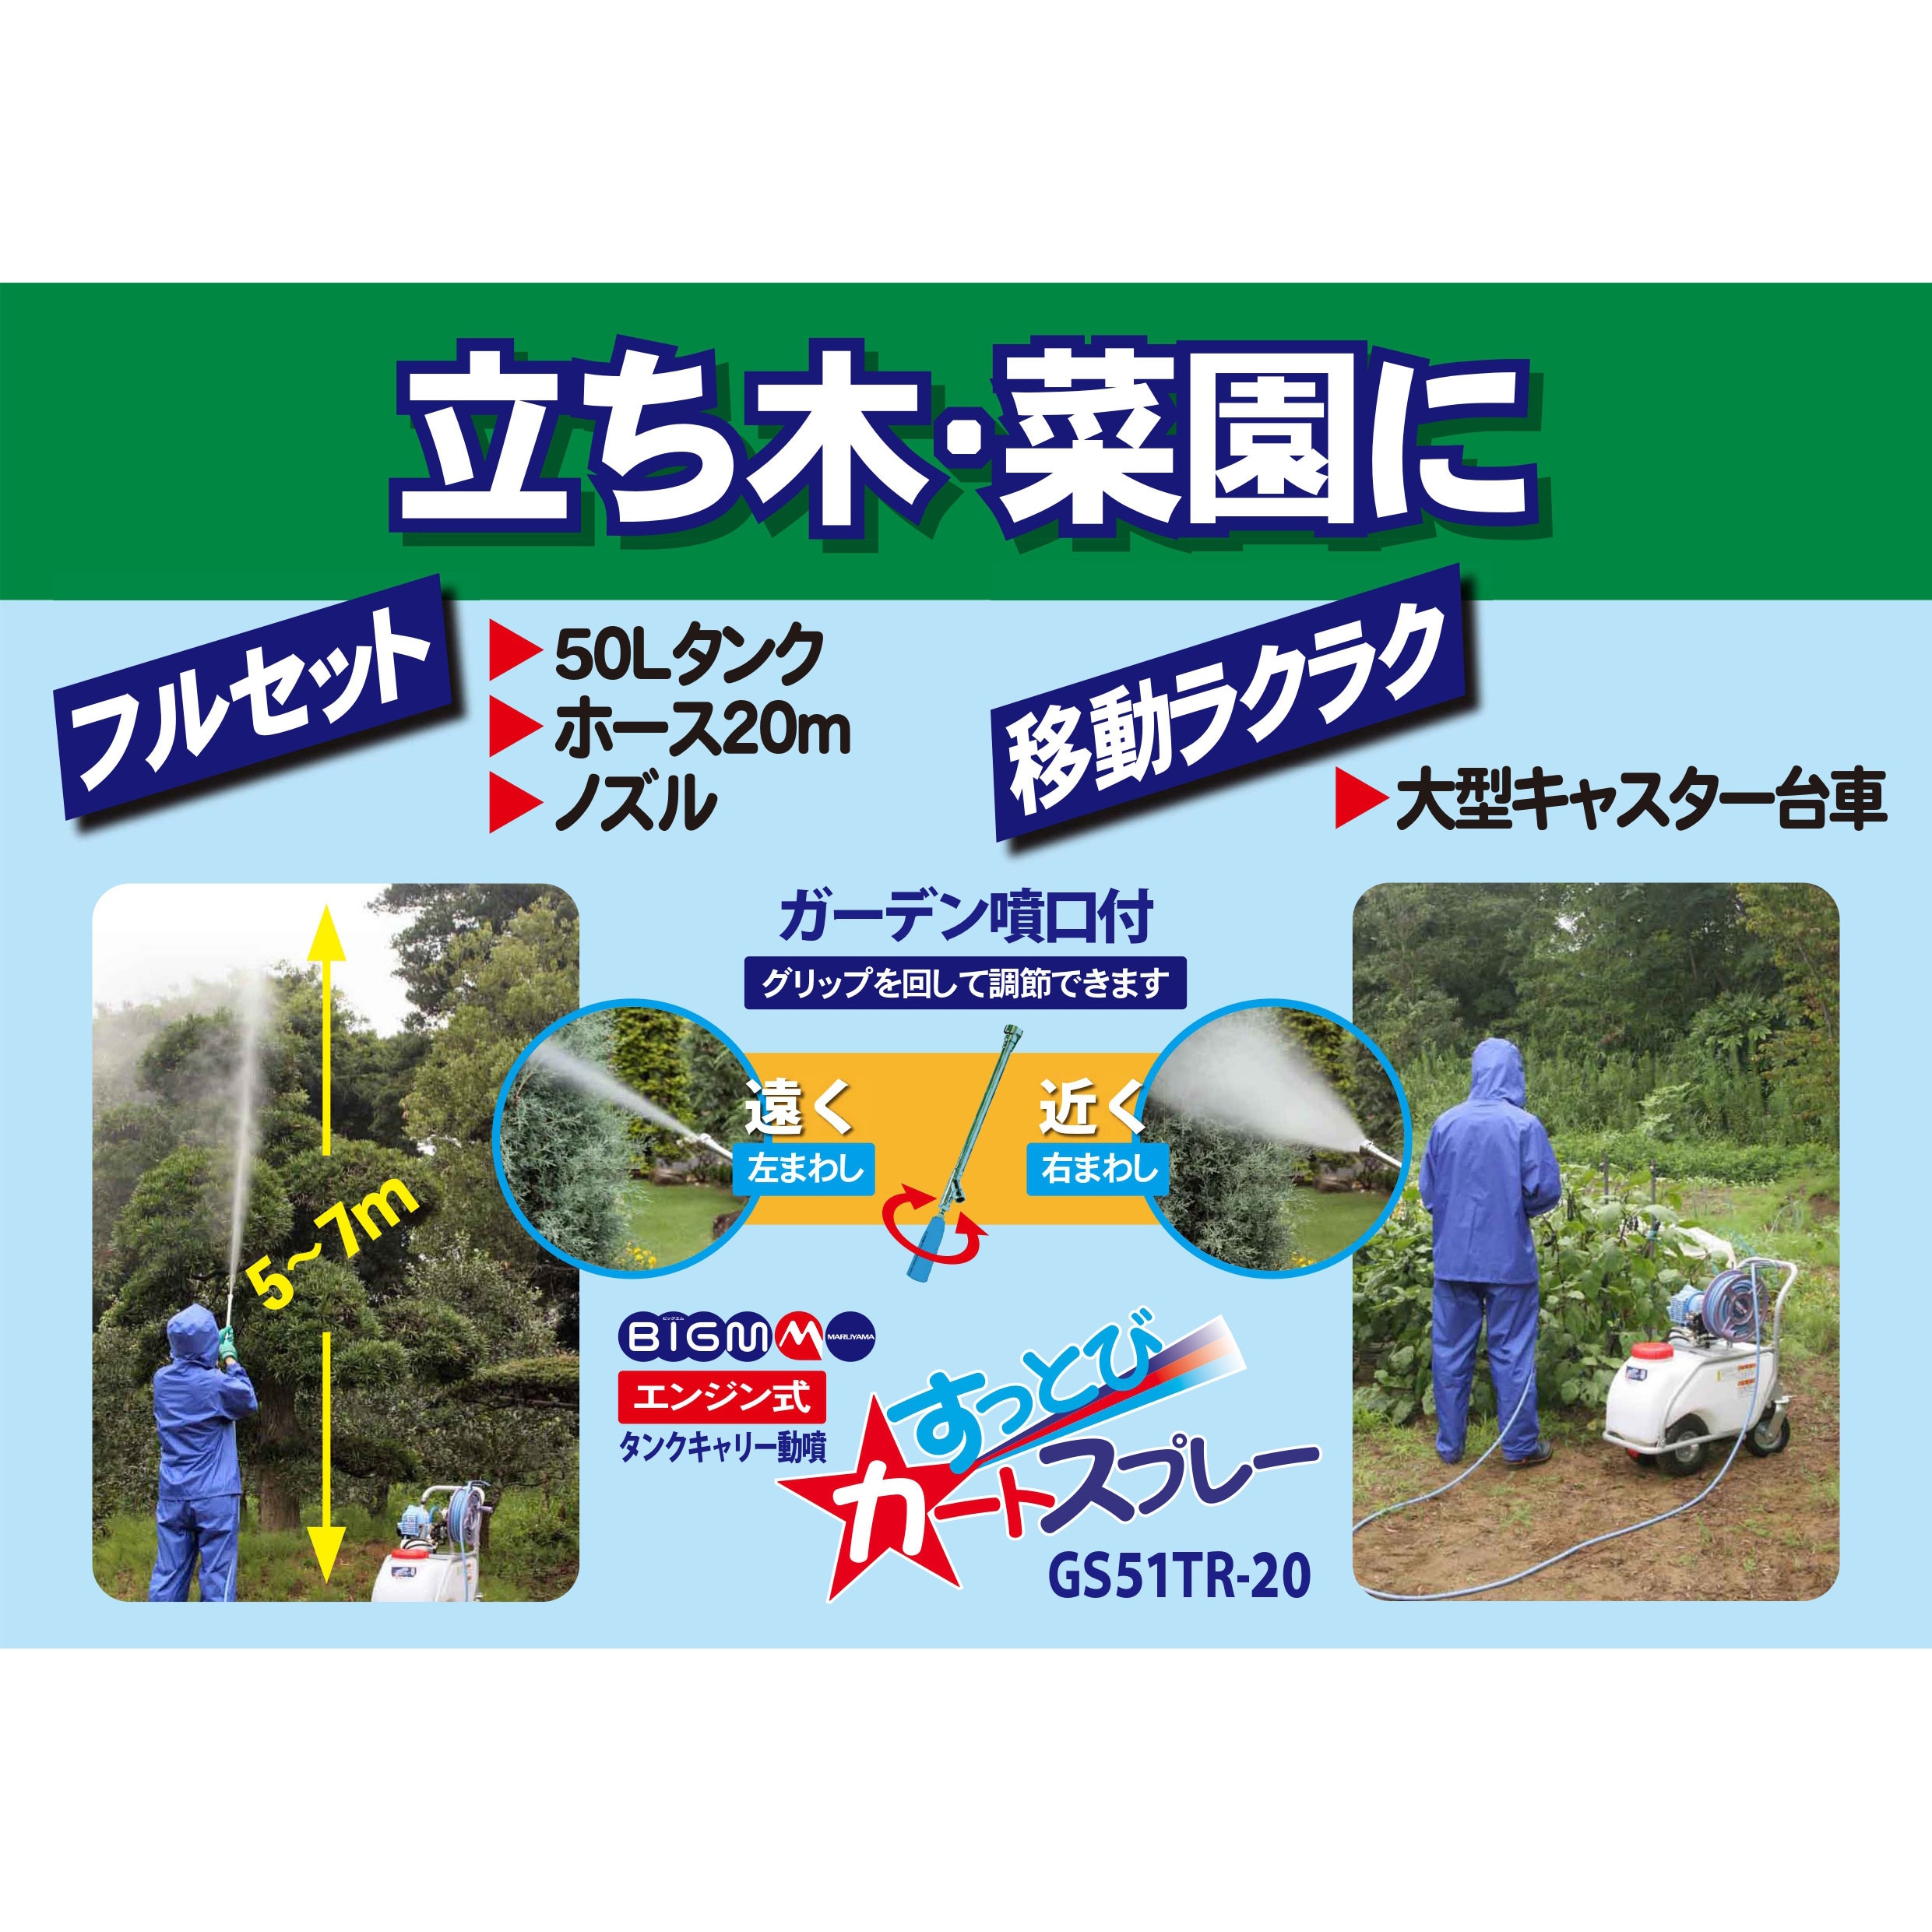 Rakuten 丸山 MLSE-51H 薬液タンク50Ｌ 噴霧ホース50m 4サイクルエンジン ポータブル動噴 丸山製作所 新品 